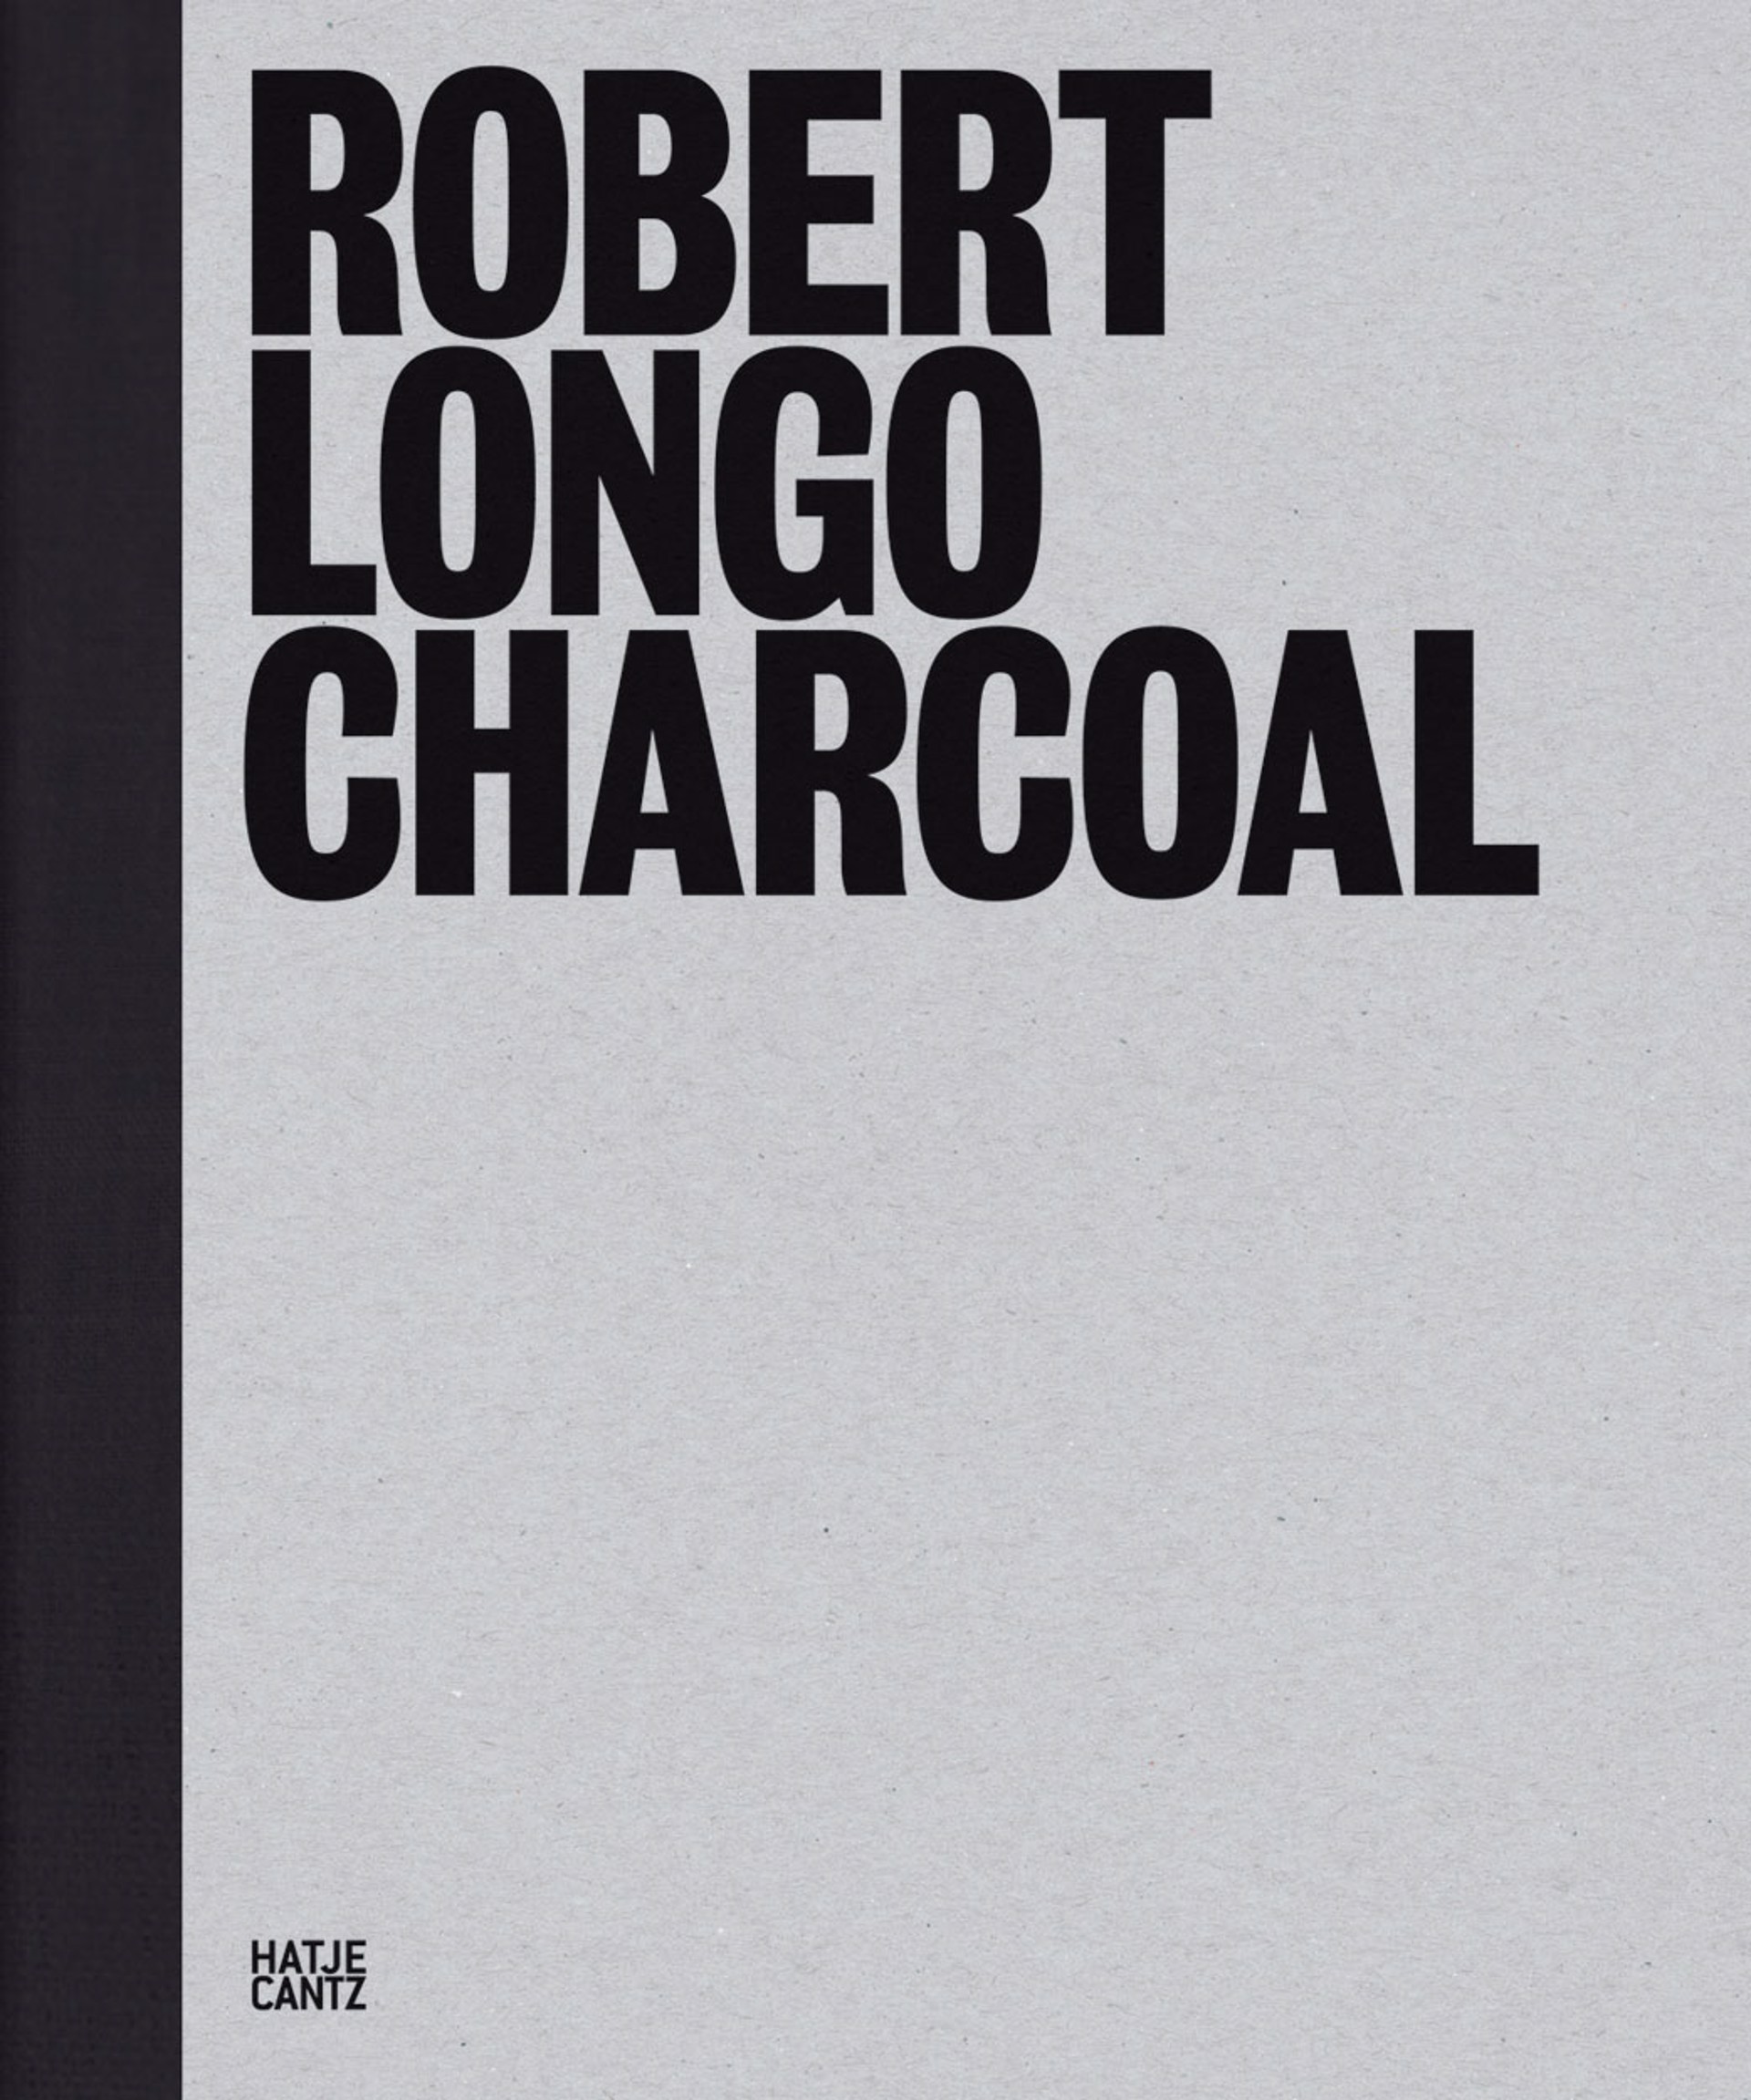 Robert Longo: Charcoal by Robert Longo